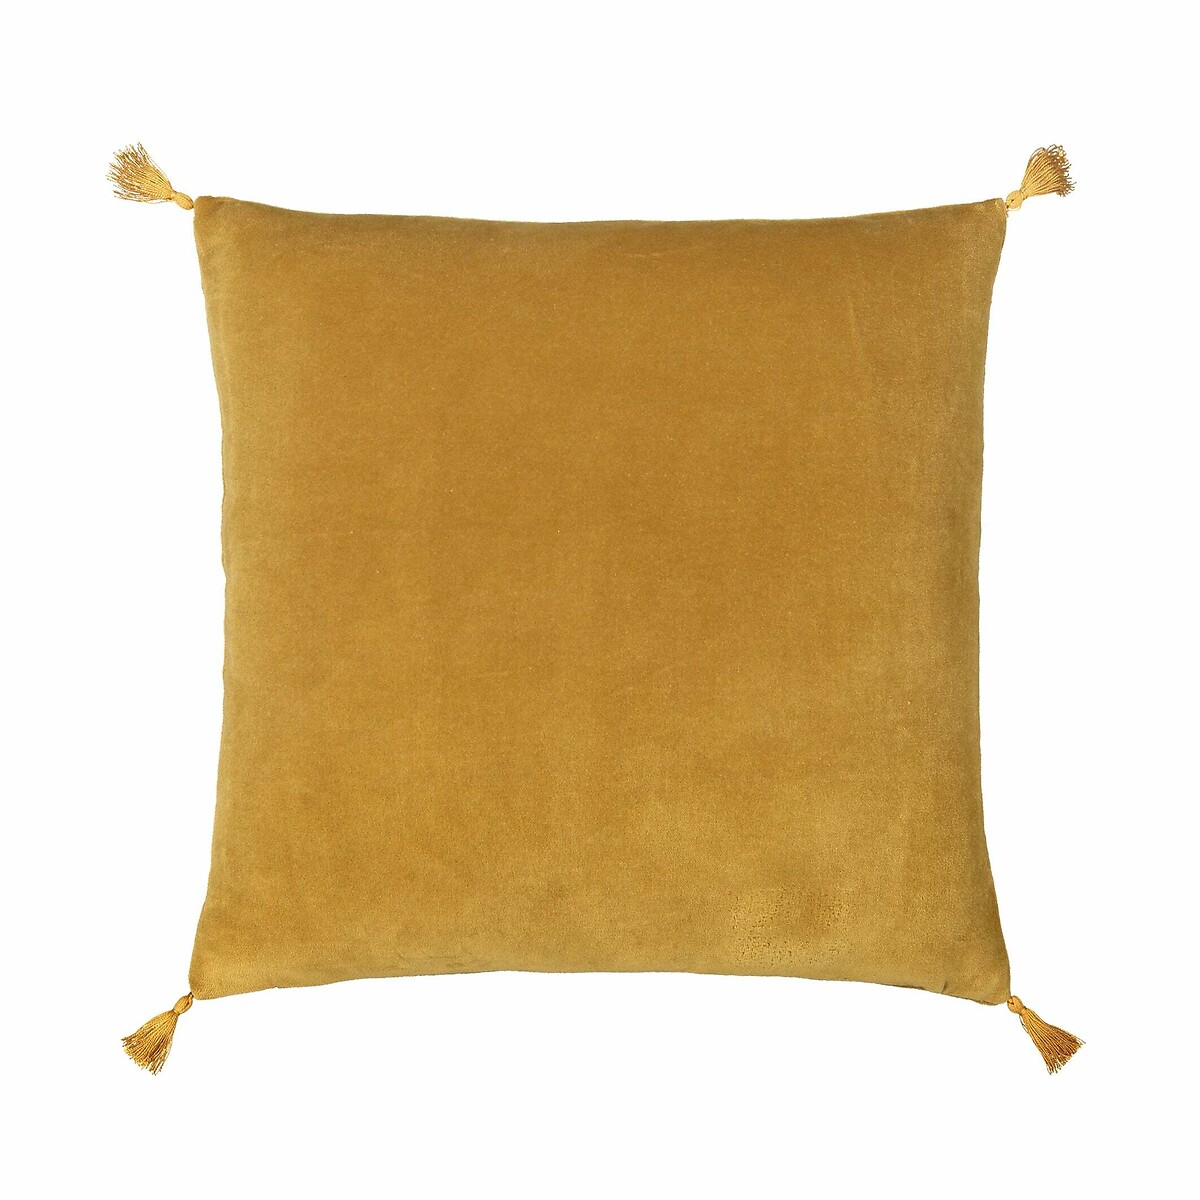 Чехол LaRedoute На подушку из велюра Paula 40 x 40 см желтый, размер 40 x 40 см - фото 1